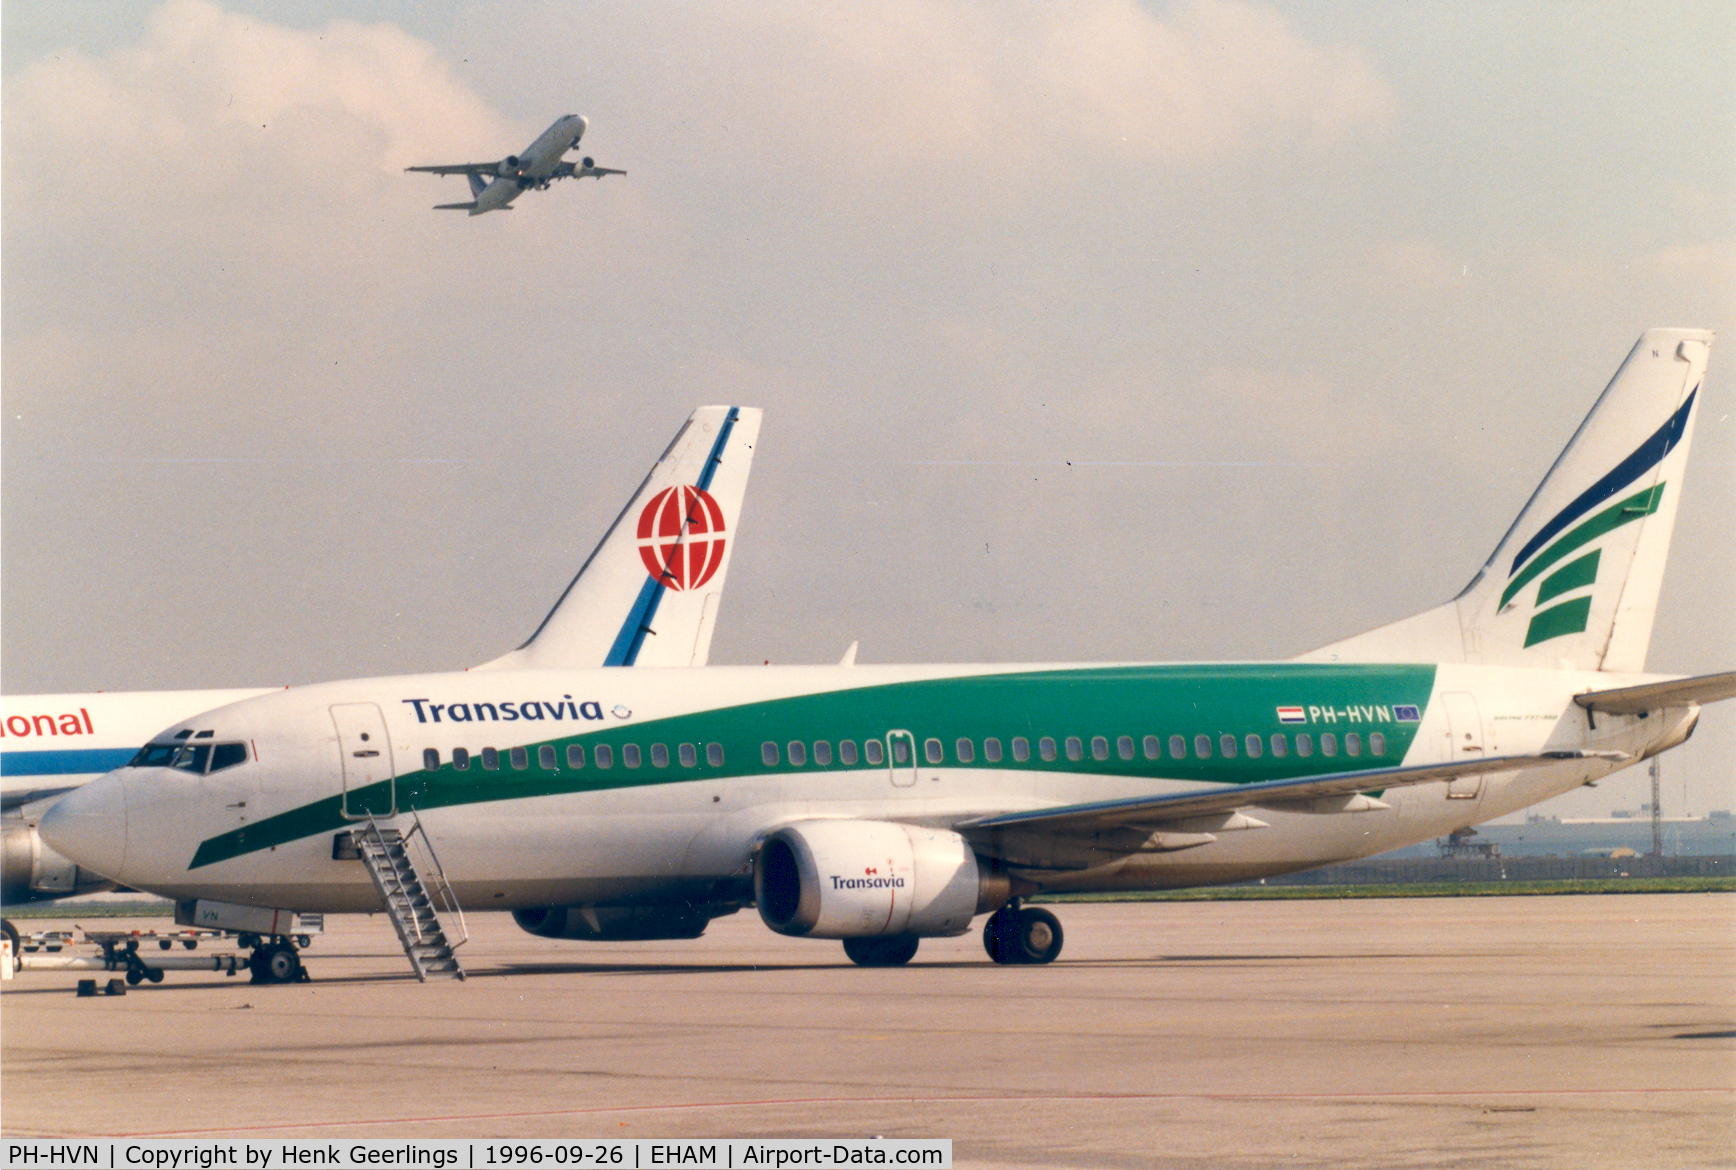 PH-HVN, 1989 Boeing 737-3K2 C/N 24327, Transavia